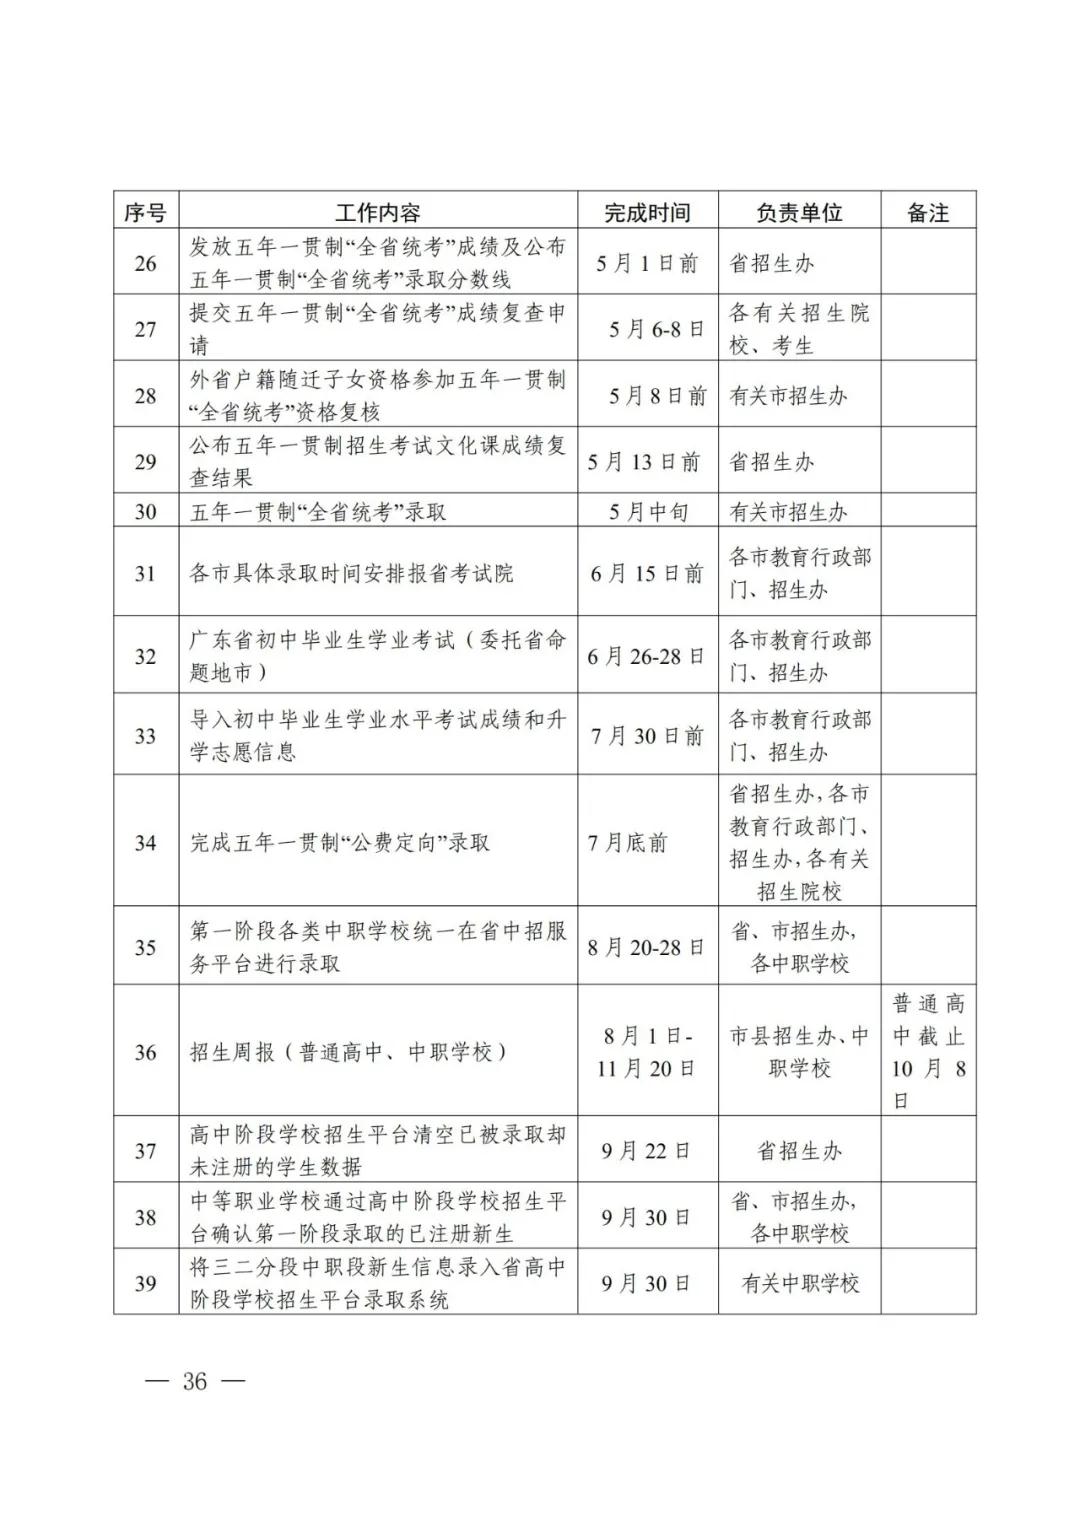 2021年广东省高中阶段学校招生录取工作实施办法公布(图3)